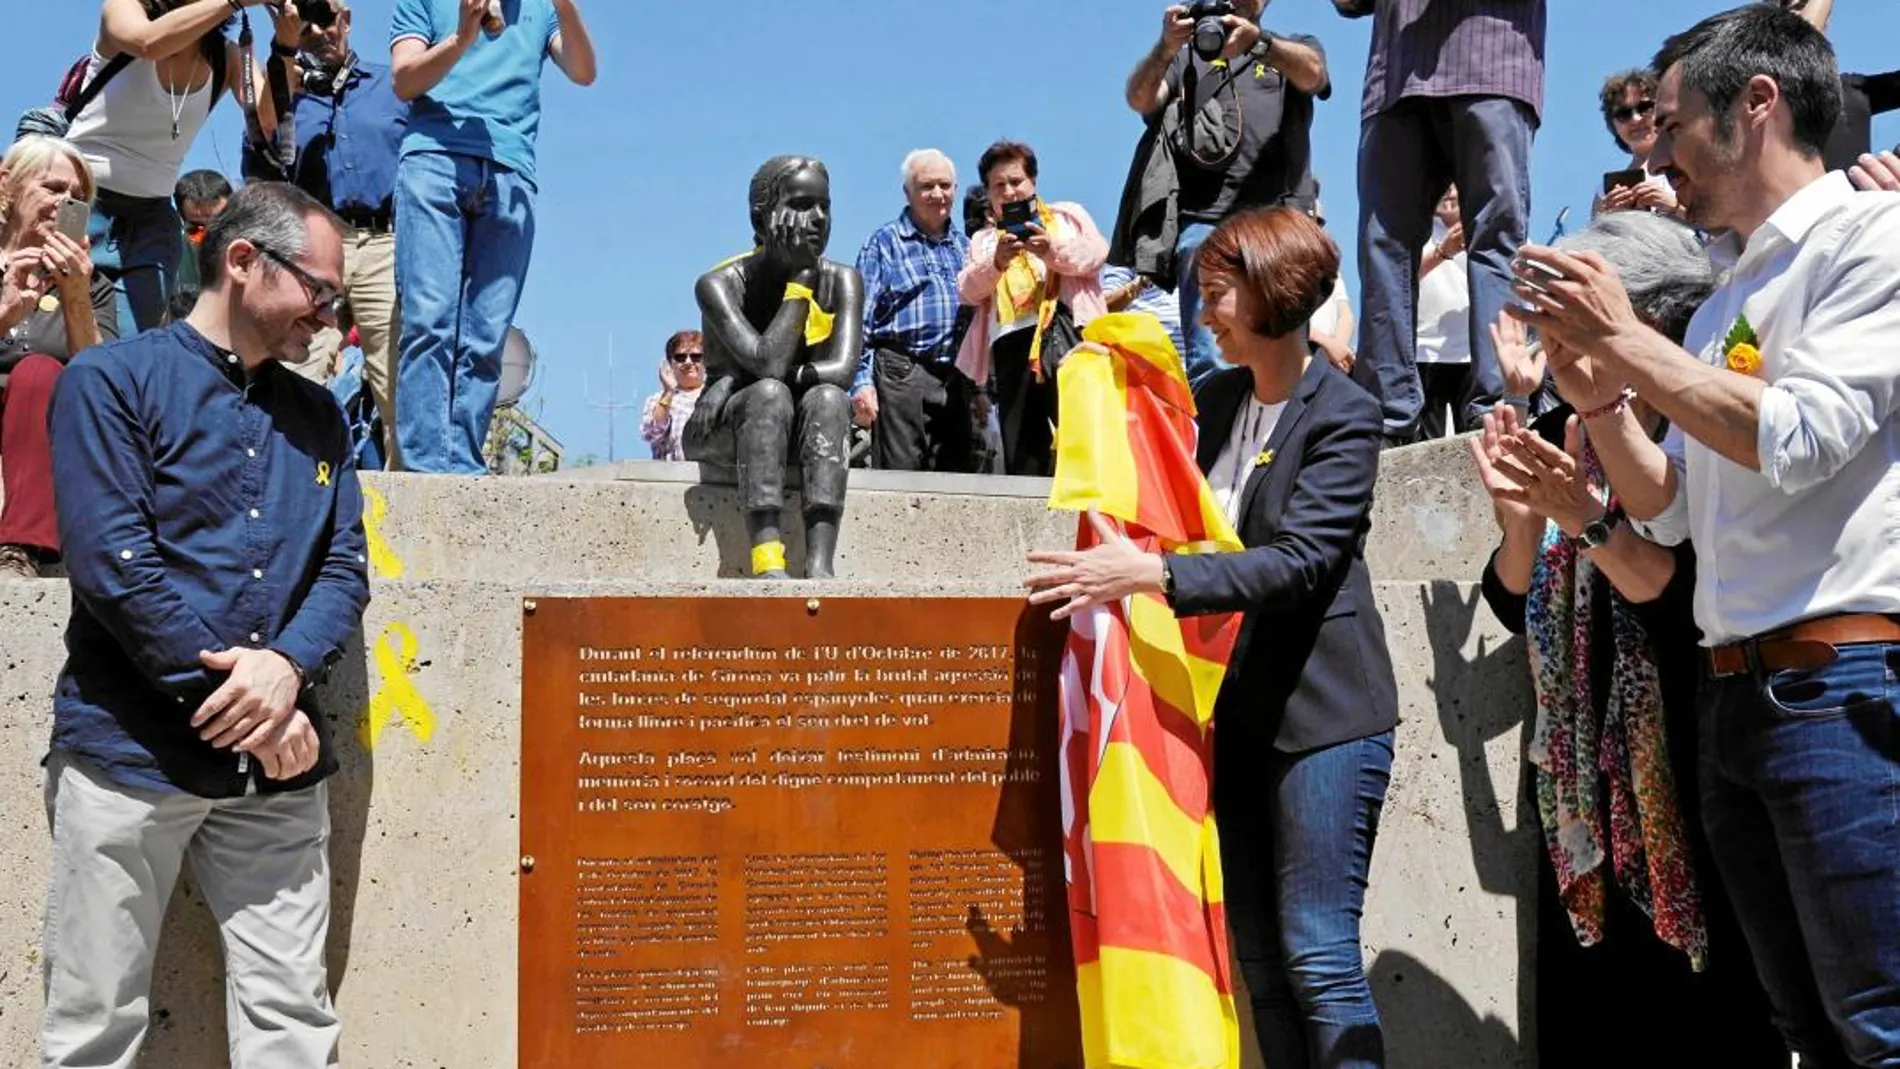 Imagen de la plaza inaugurada ayer en Gerona en homenaje al referéndum ilegal del 1-O